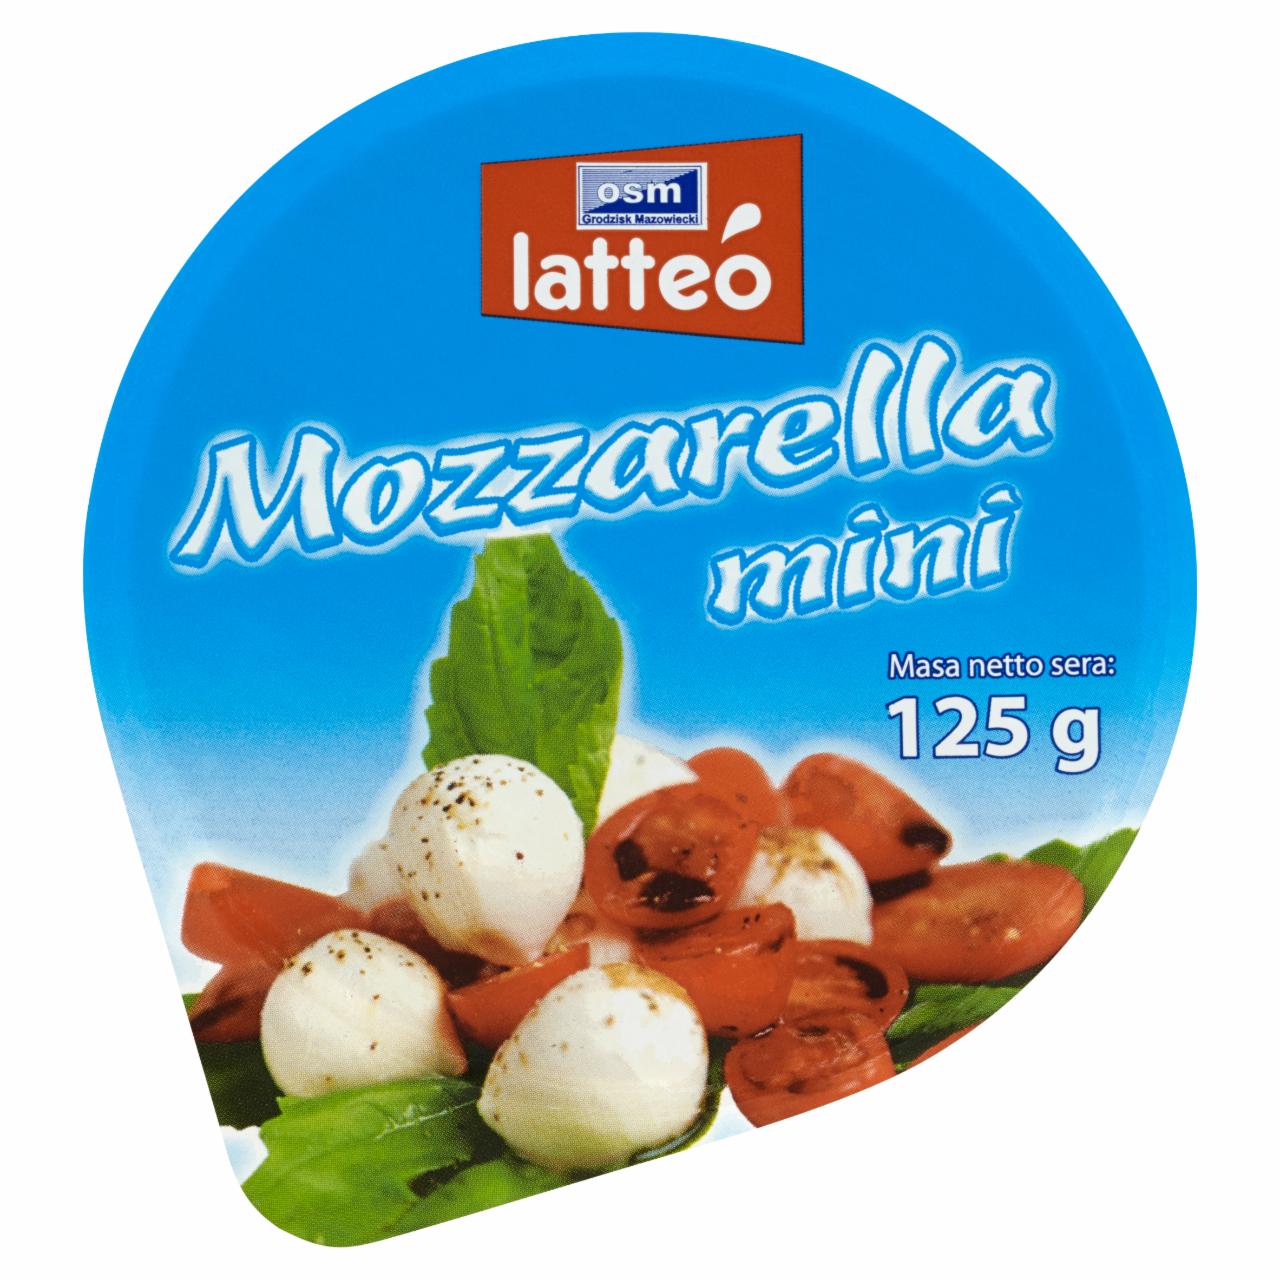 Zdjęcia - OSM Grodzisk Mazowiecki latteó Mozzarella mini 125 g